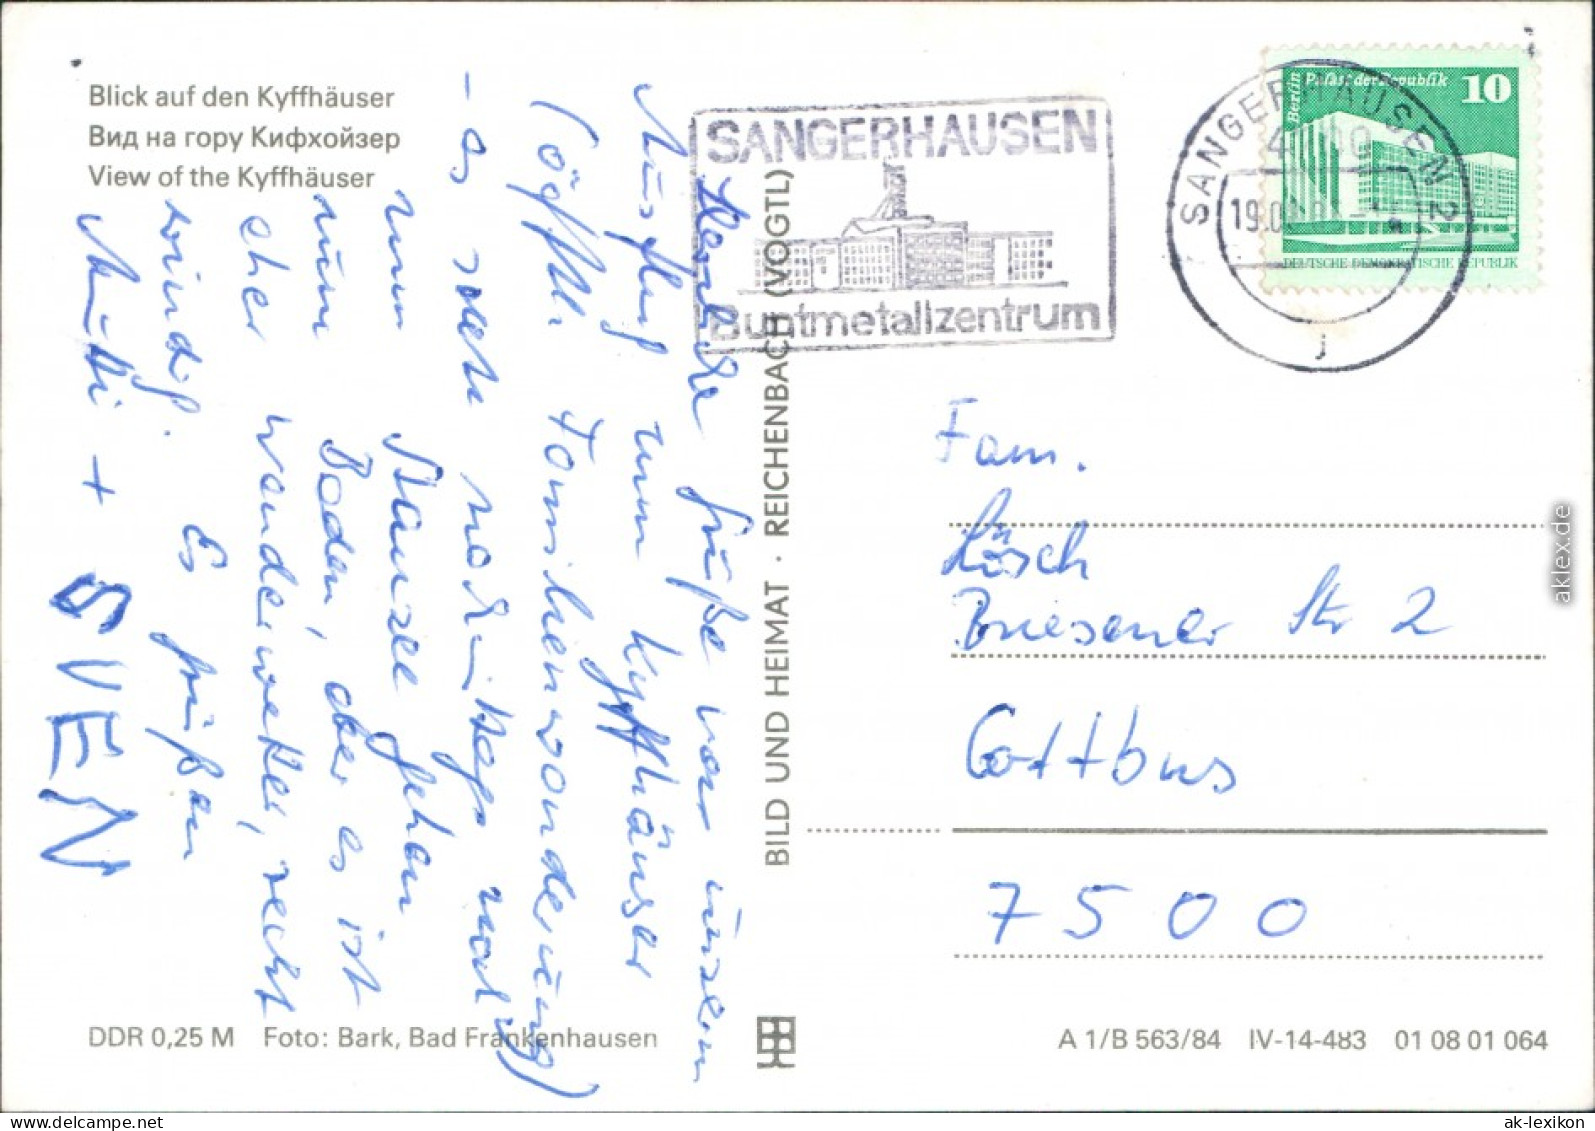 Kelbra (Kyffhäuser) Kaiser-Friedrich-Wilhelm/Barbarossa-Denkmal 1984 - Kyffhäuser